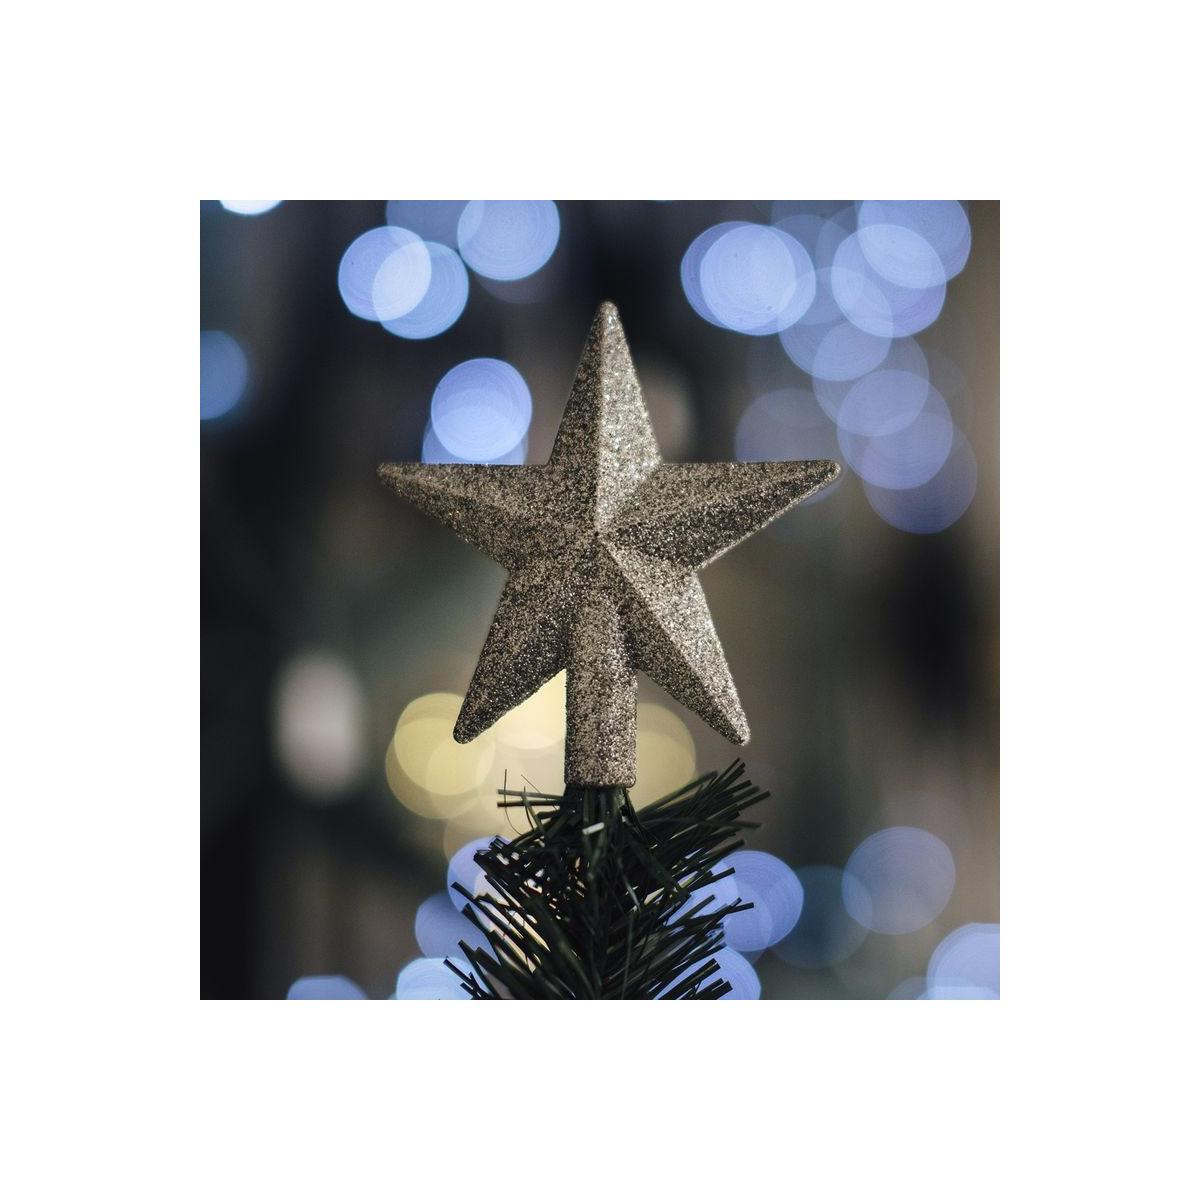 Topo da árvore estrela com glitter prateado